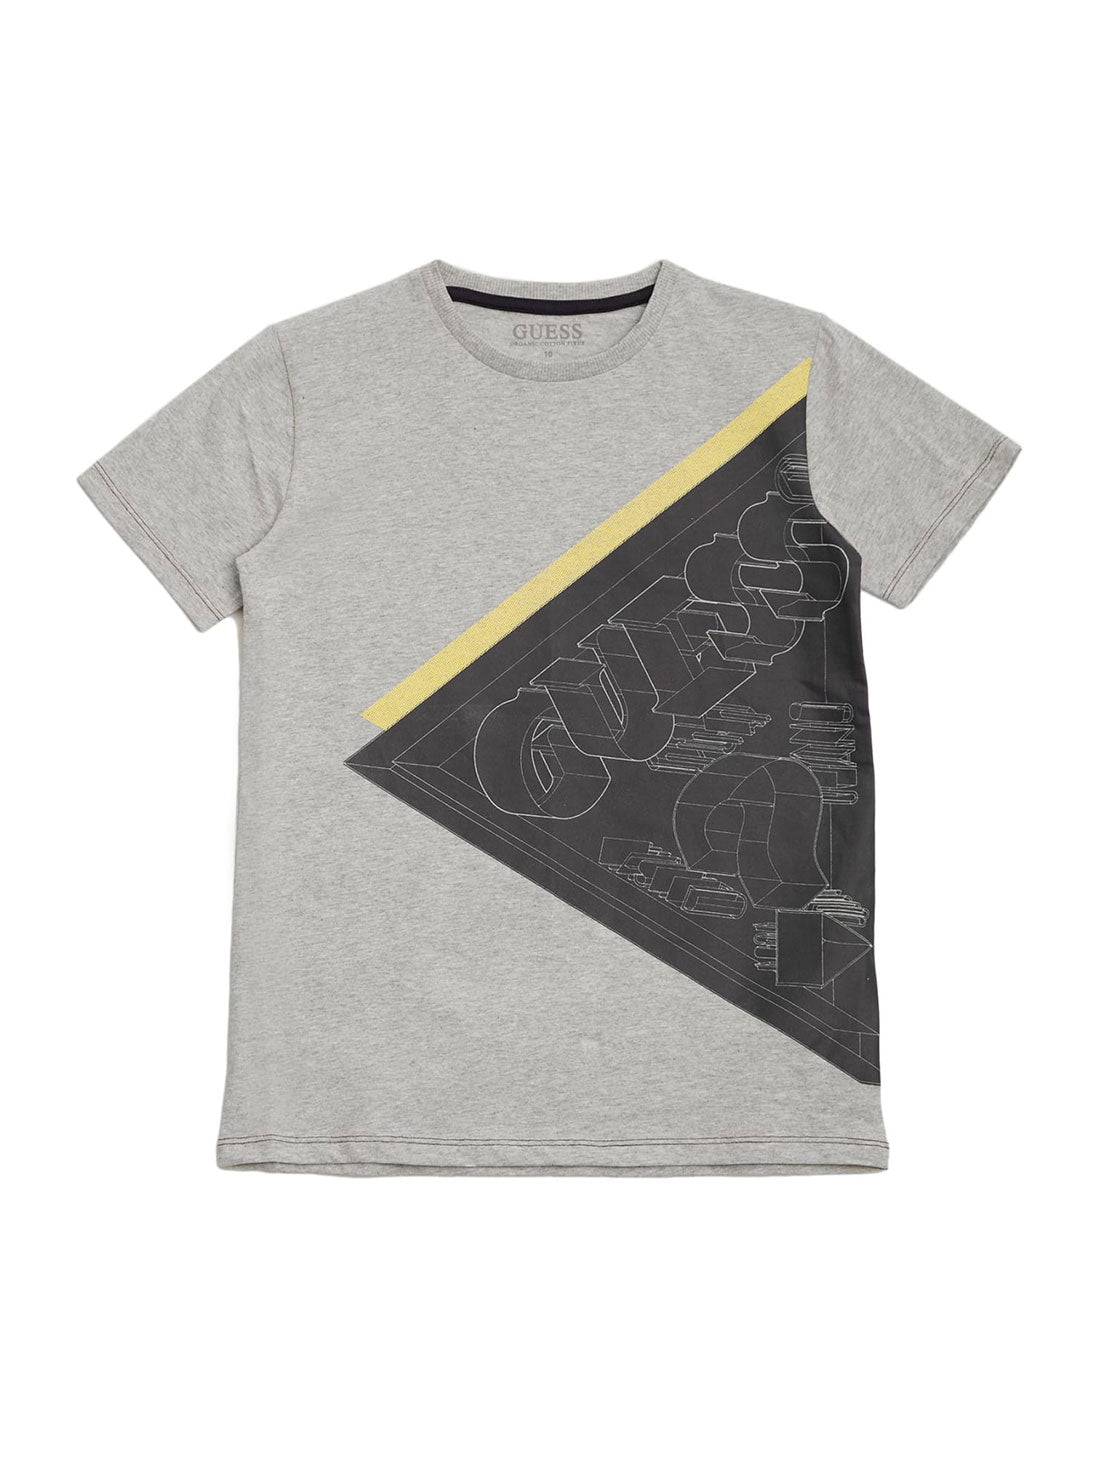 GUESS Kids Big Boy Light Stone Logo T-Shirt (7-16) L2RI22K8HM0 Front View